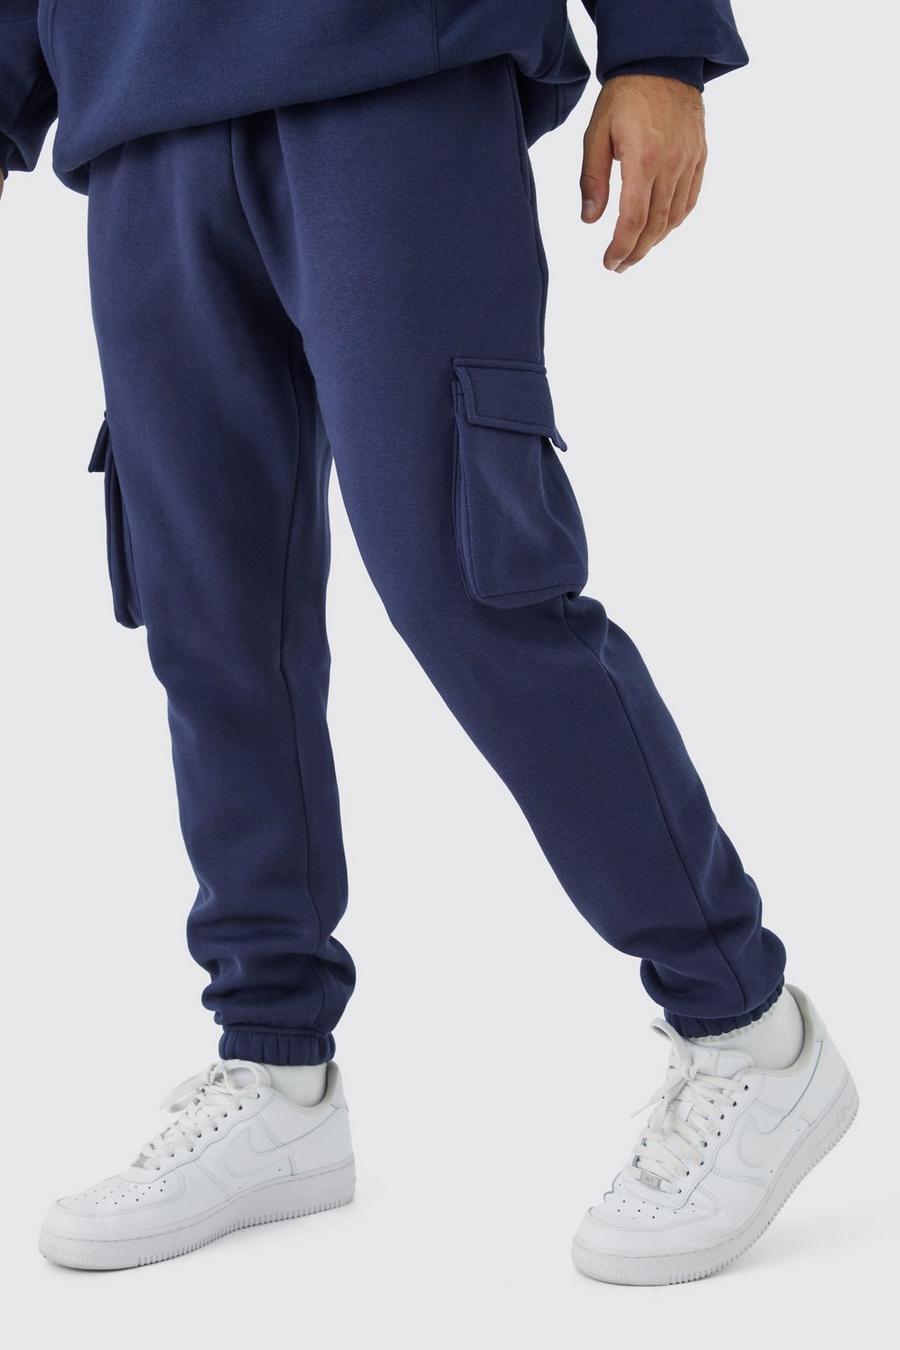 Pantalón deportivo cargo ajustado, Navy